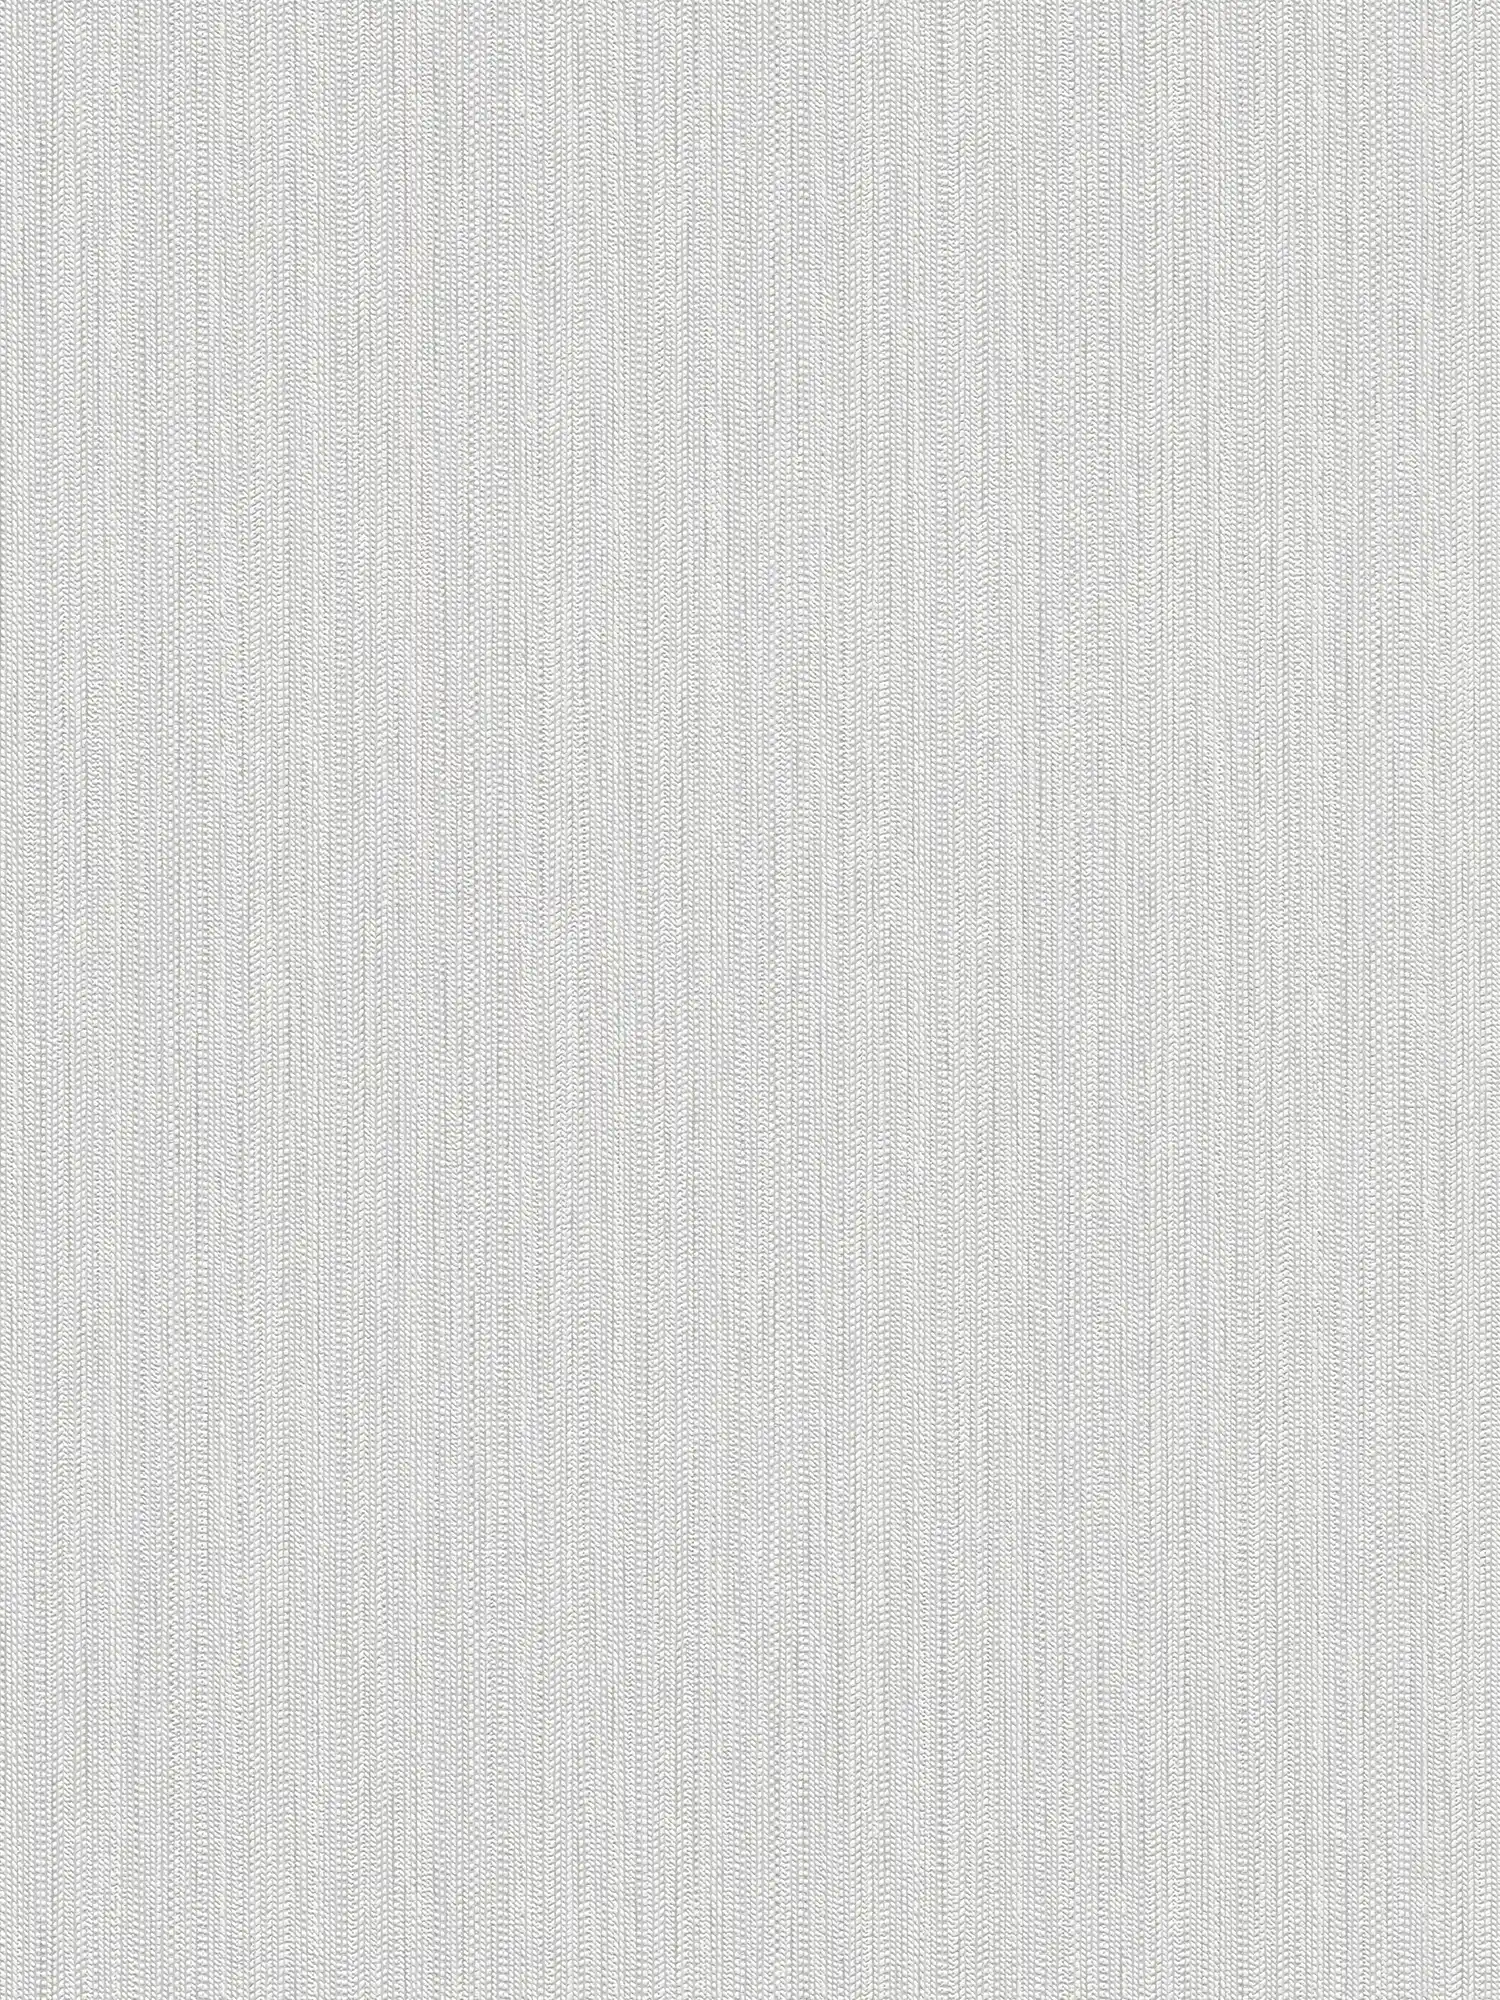 Carta da parati in tessuto non tessuto con struttura a treccia - bianco, grigio chiaro
